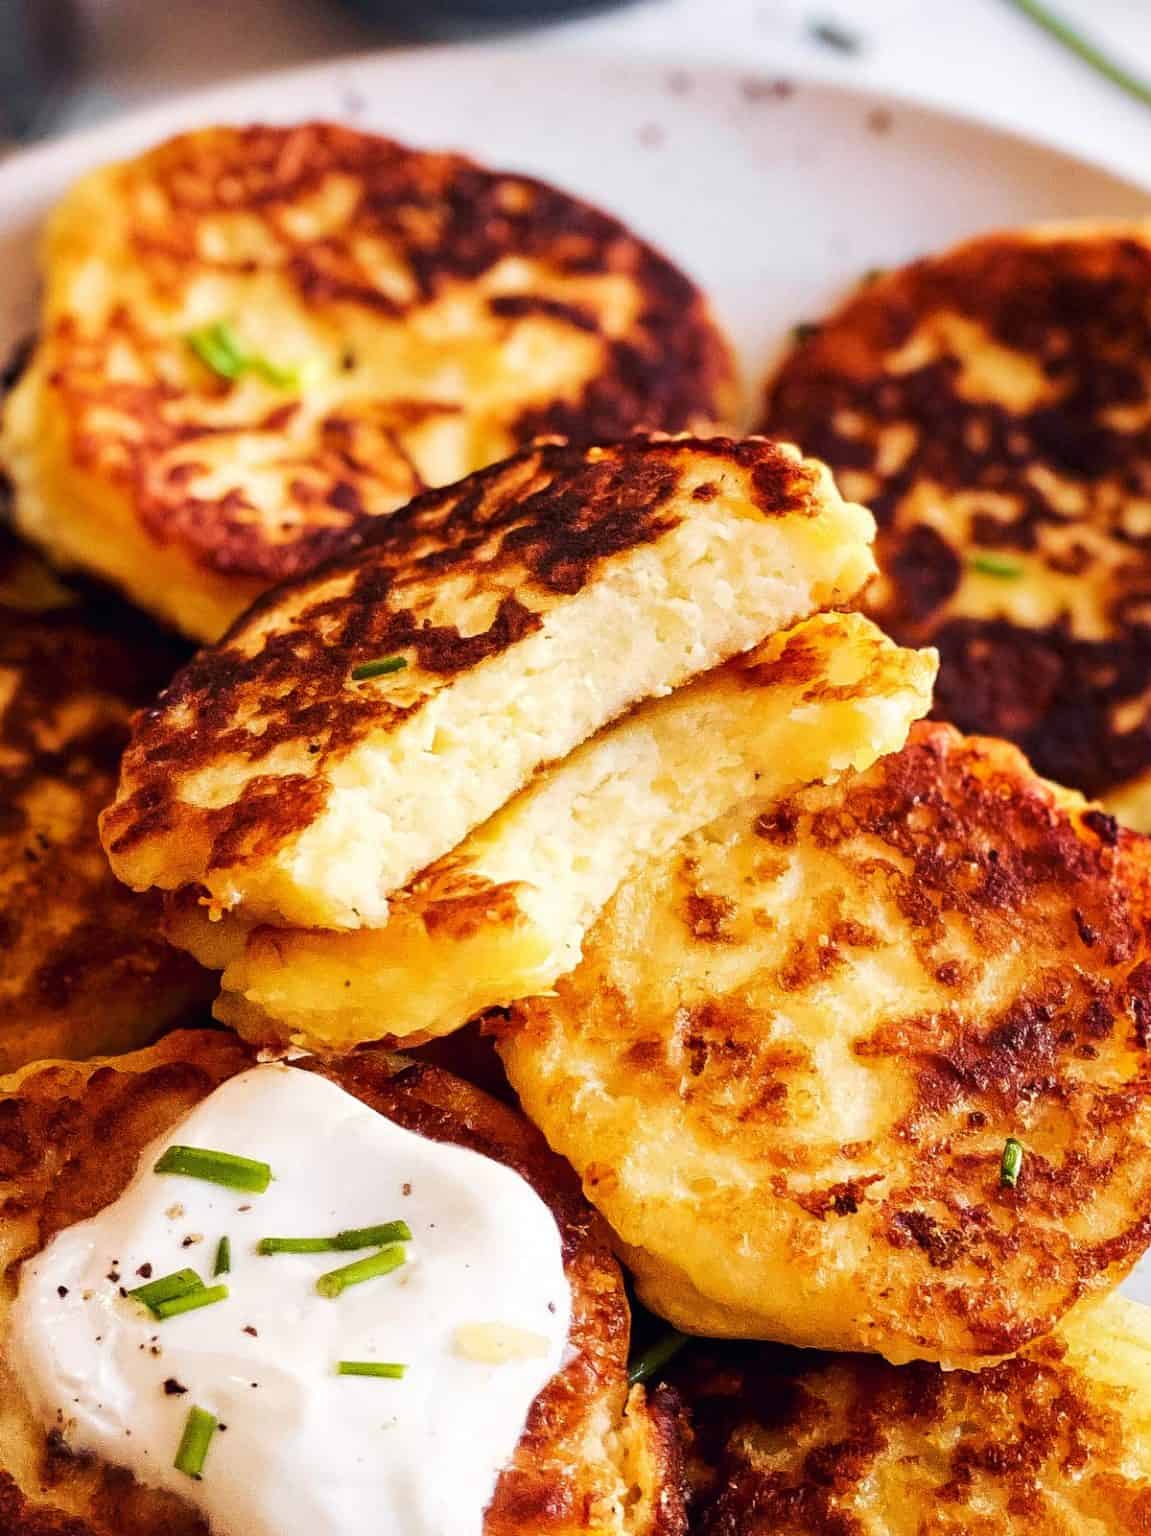 Mashed Potato Pancakes Image 7 1151x1536 